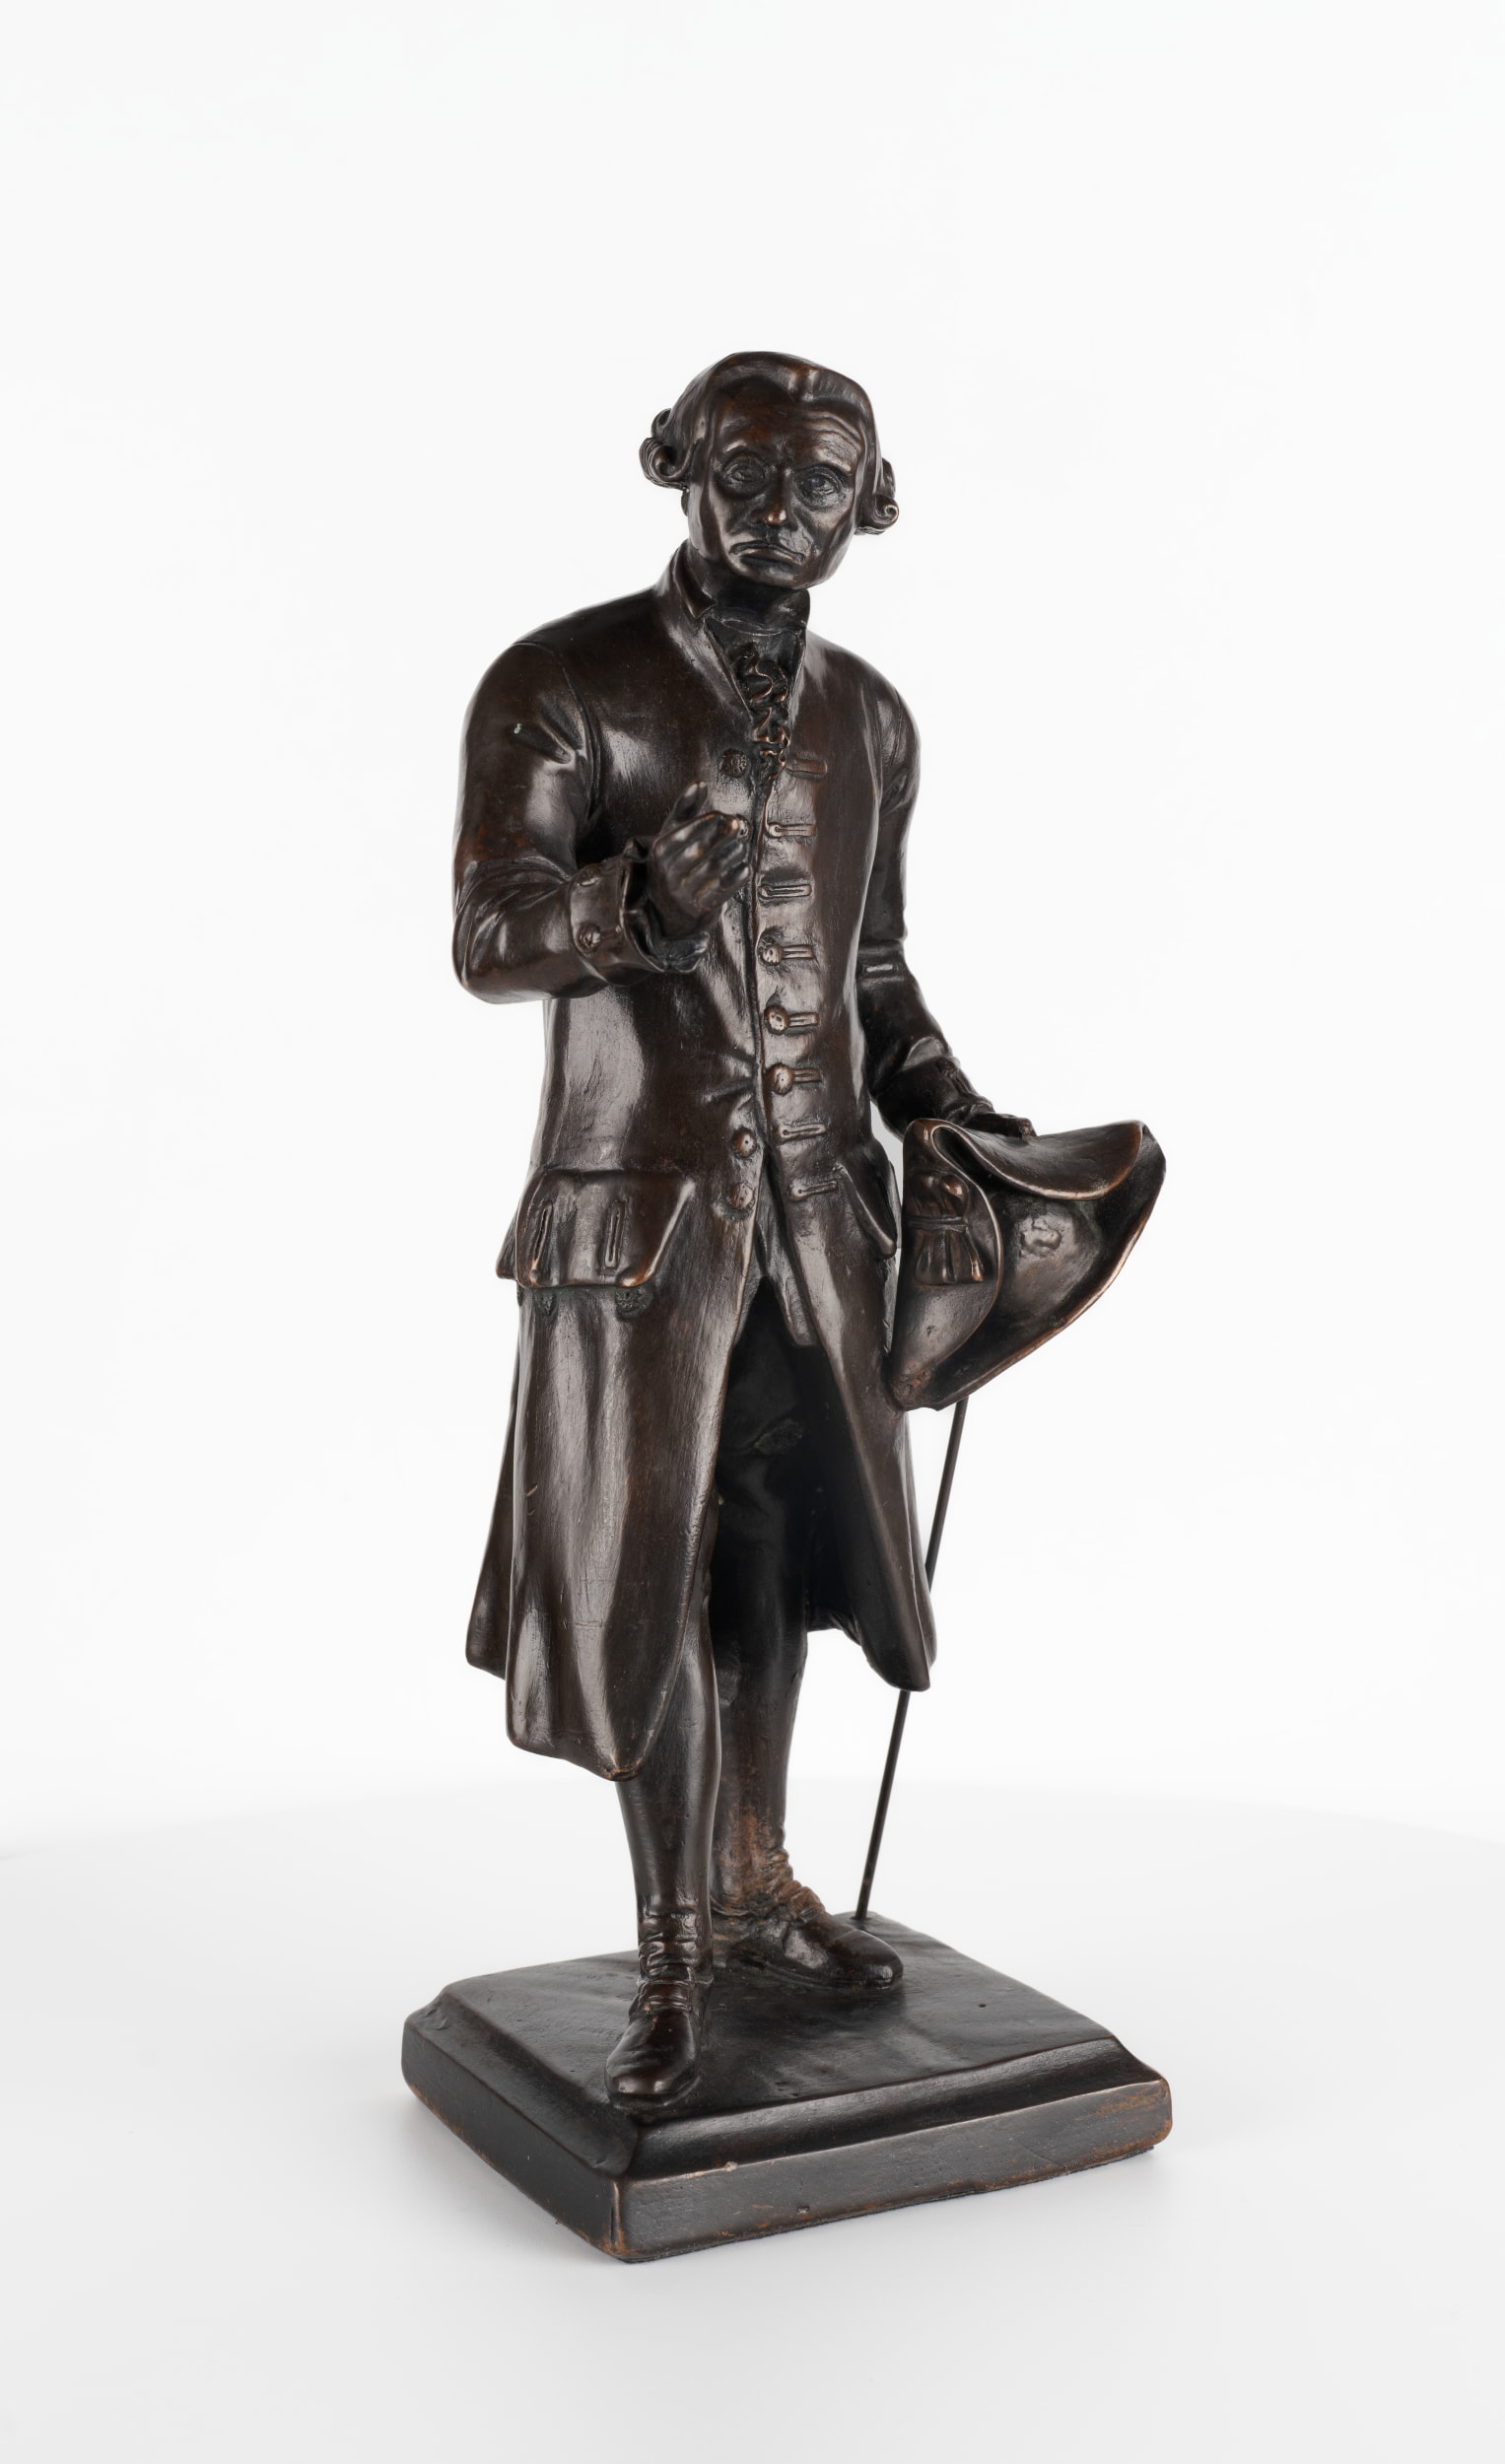 Statuette des Immanuel Kant